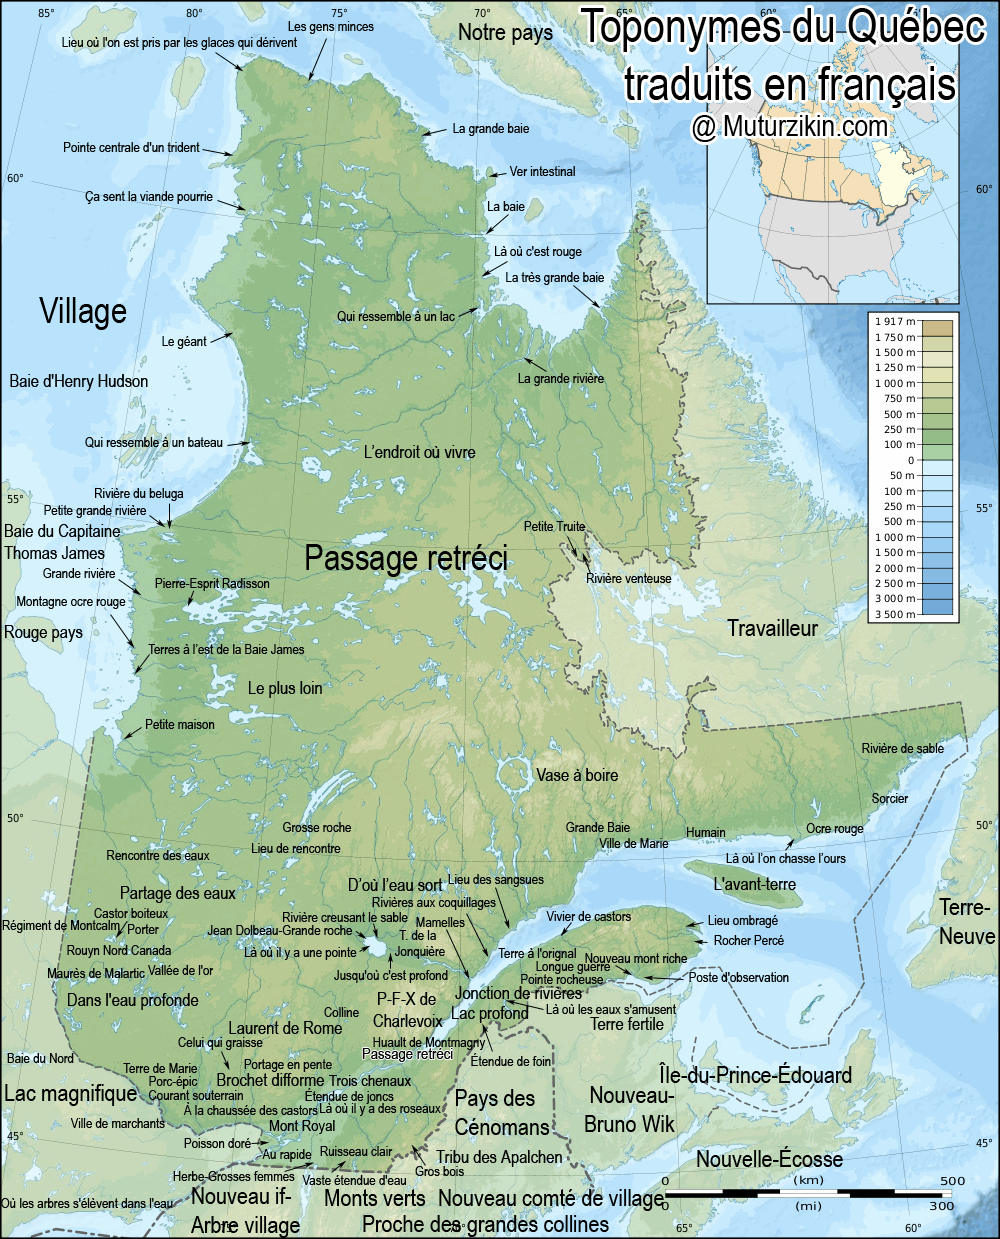 Quebec - Langues amériendiennes / Aboriginal languages